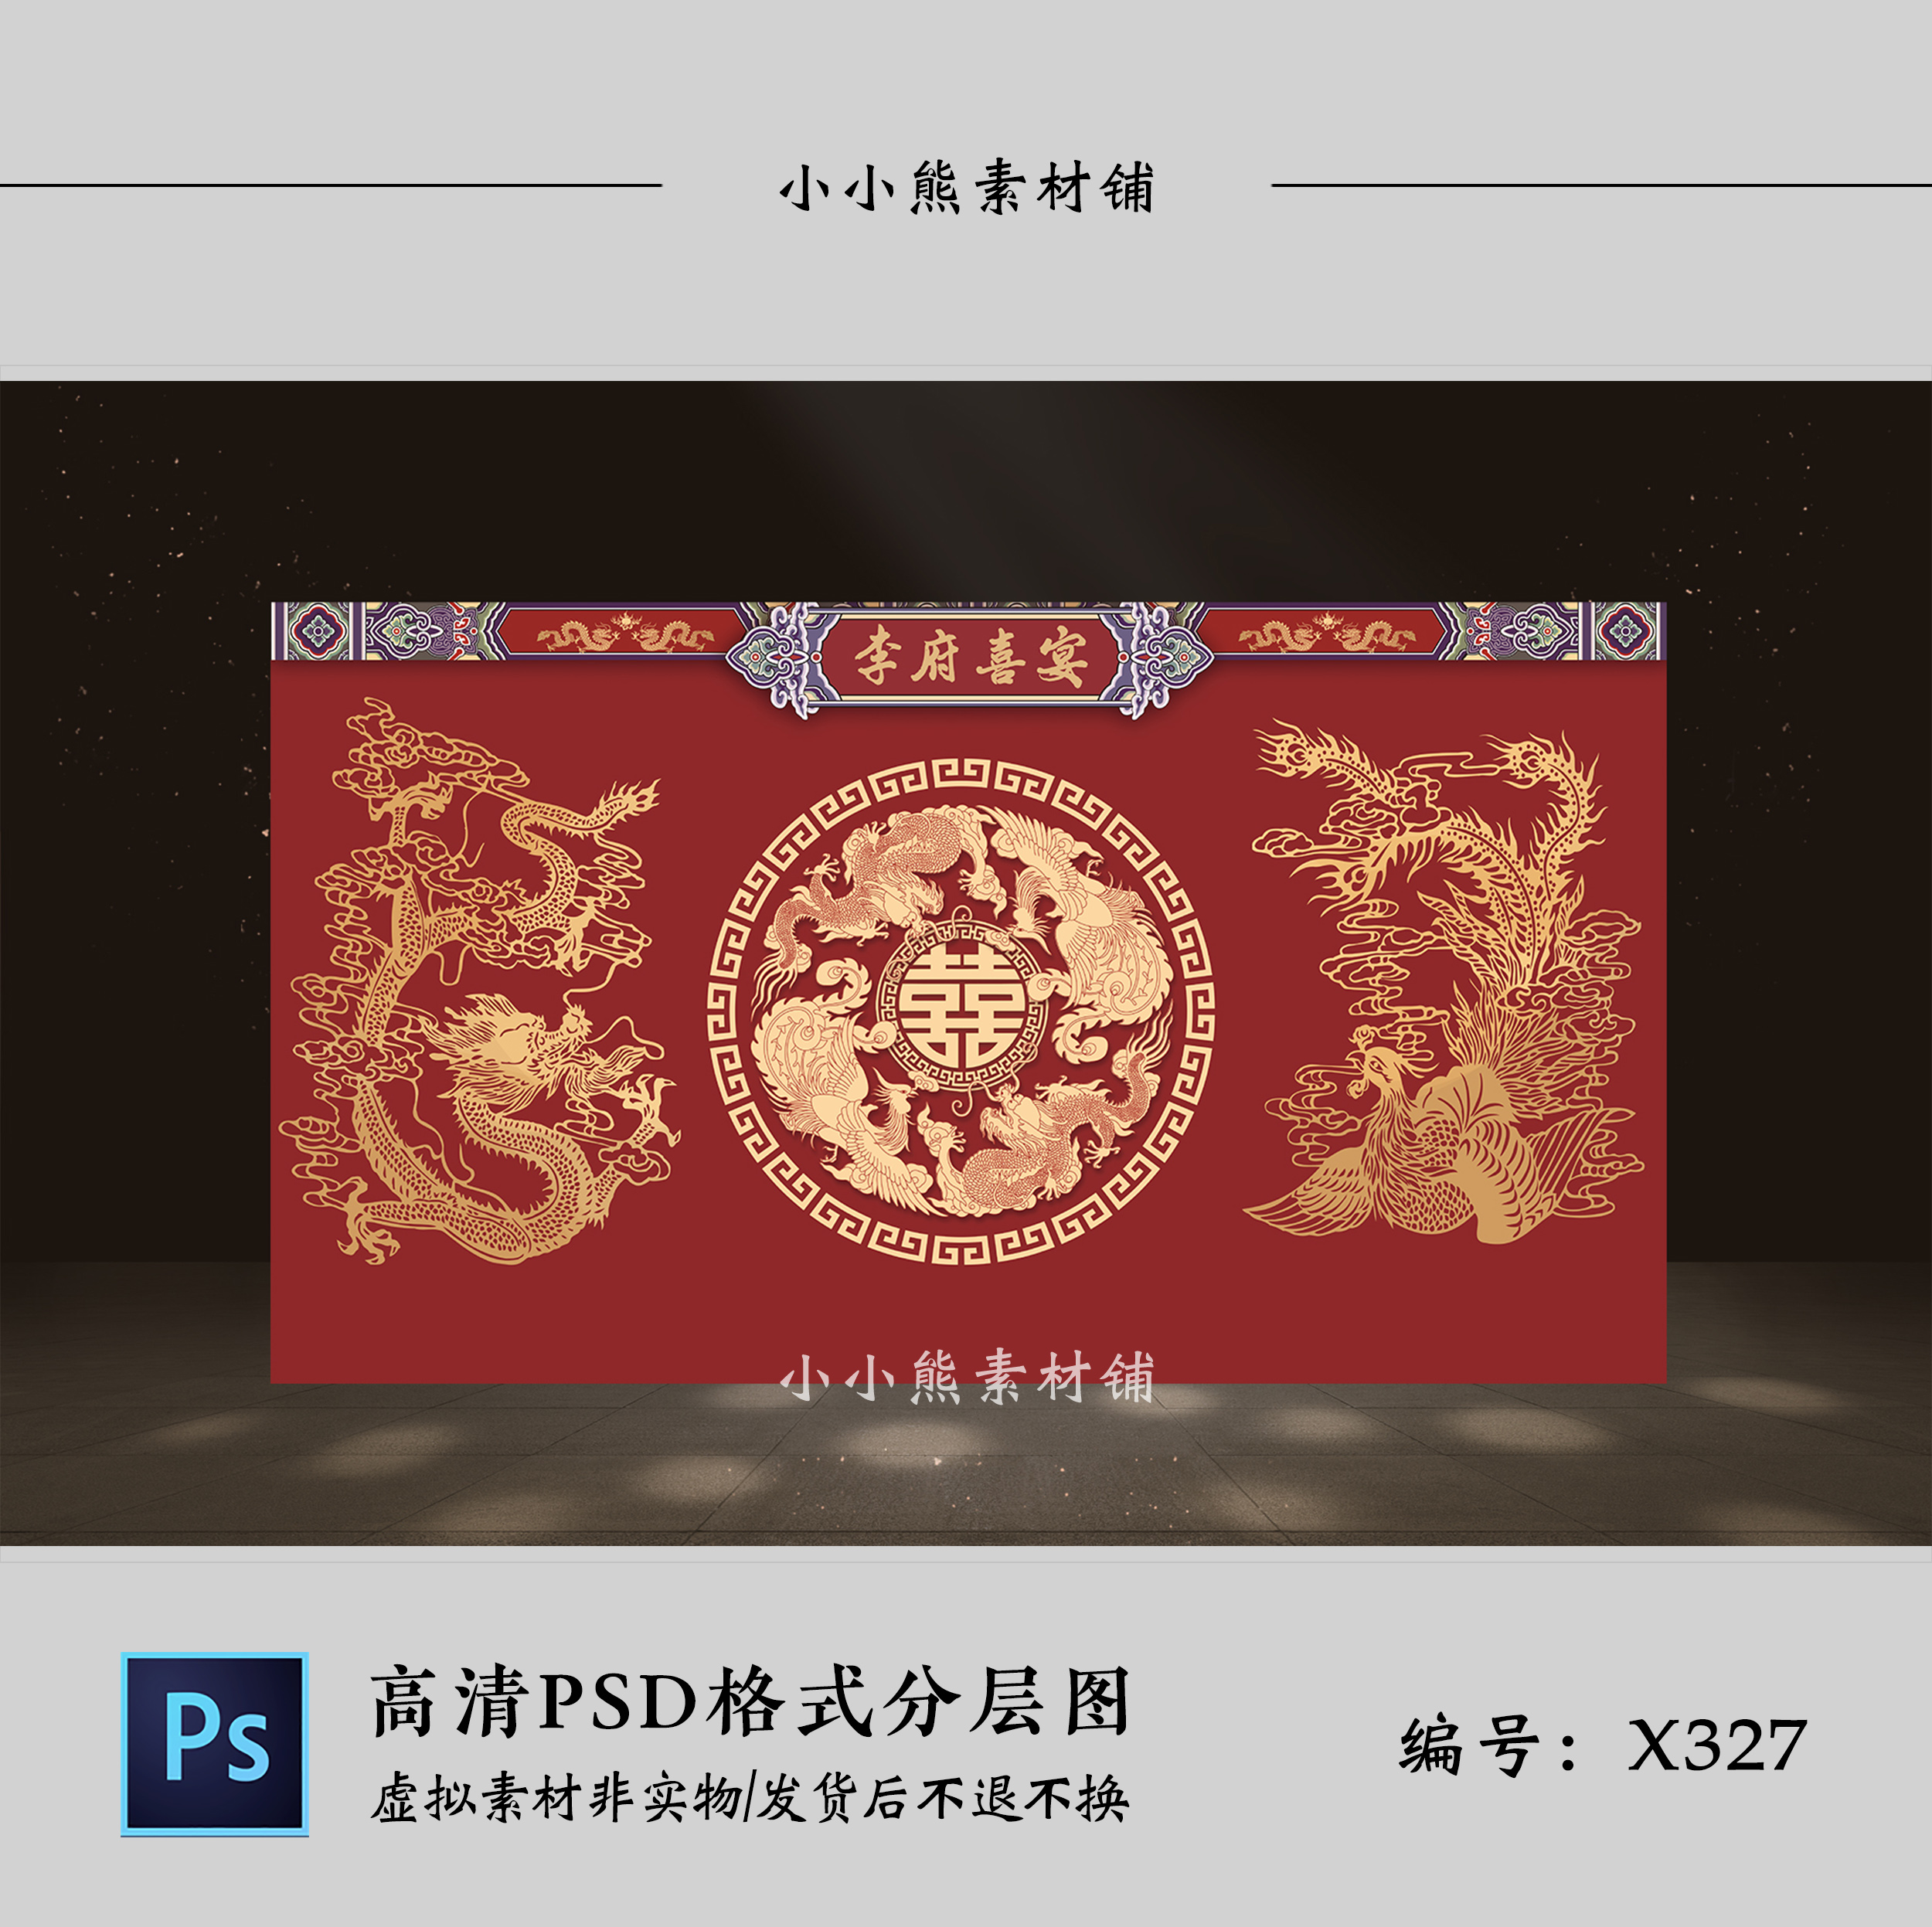 暗红色新中式龙凤喜字婚礼迎宾签到舞台背景墙设计效果图PSD模板